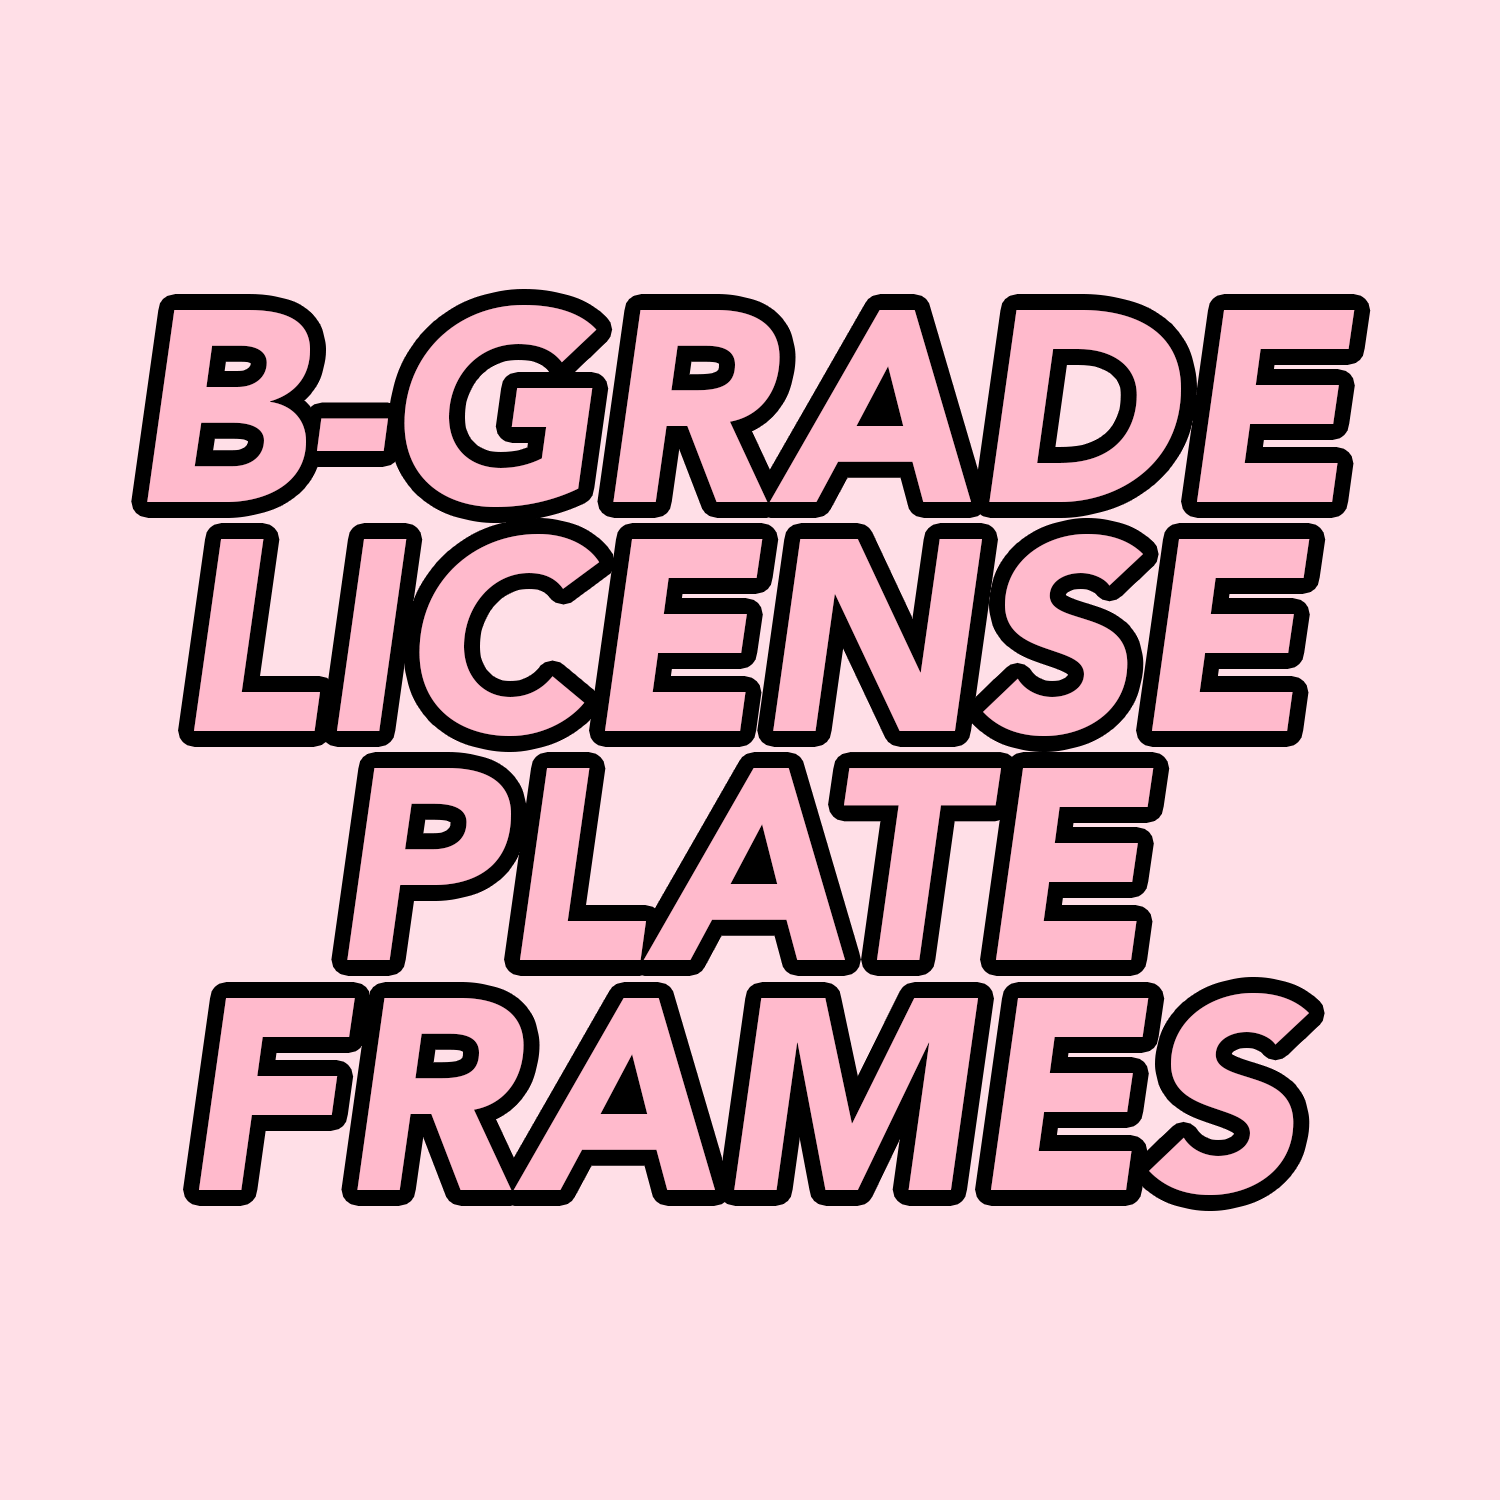 *B-GRADE* License Plate Frames